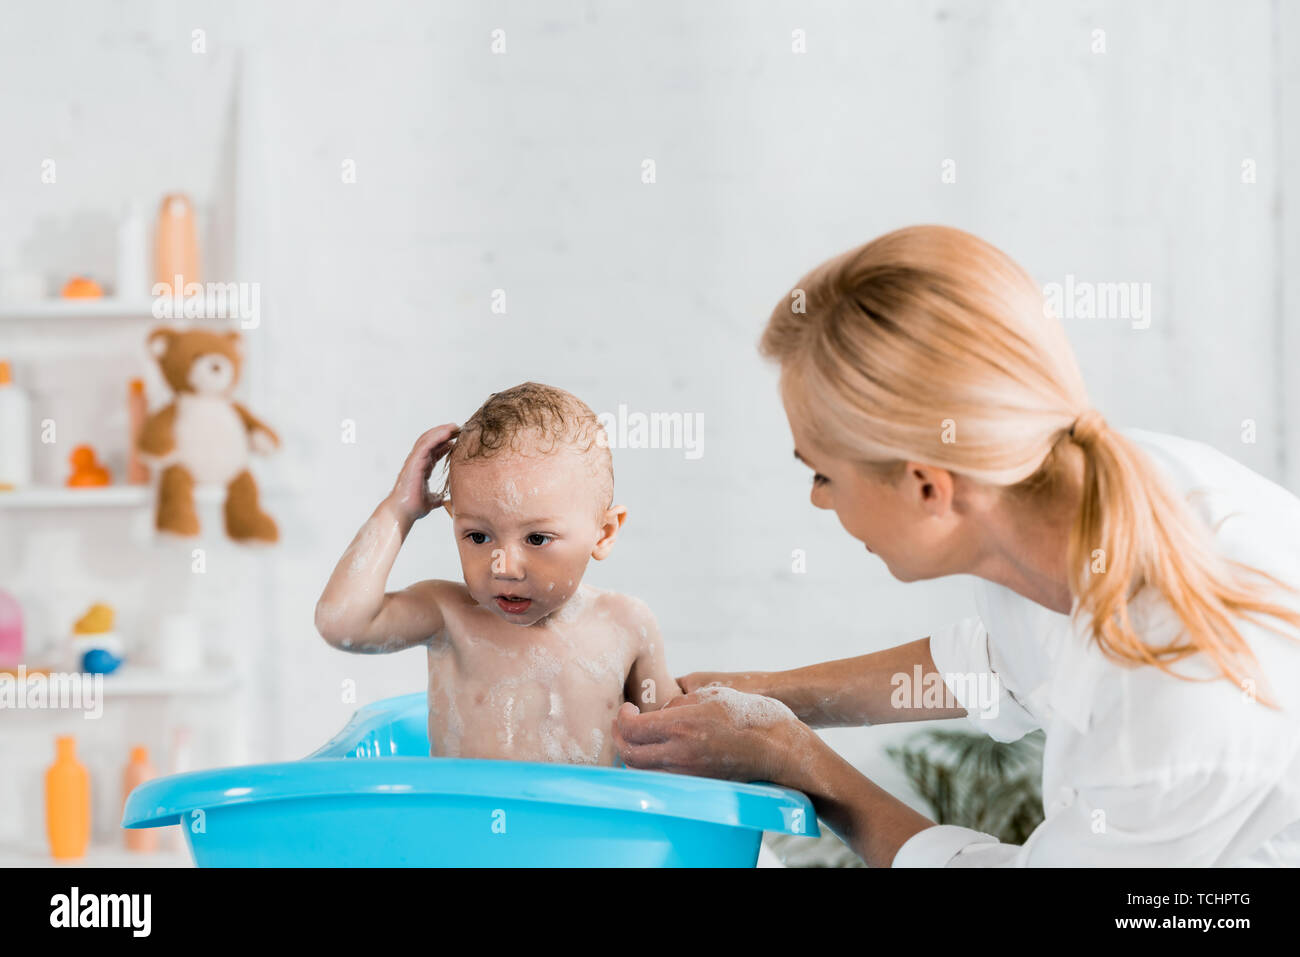 Мать друга в ванной. Помыла сына в ванной. Мама с сыном играют в ванной. Семейная эмоция радость в ванной комнате. Мама погружает сына в ванну.